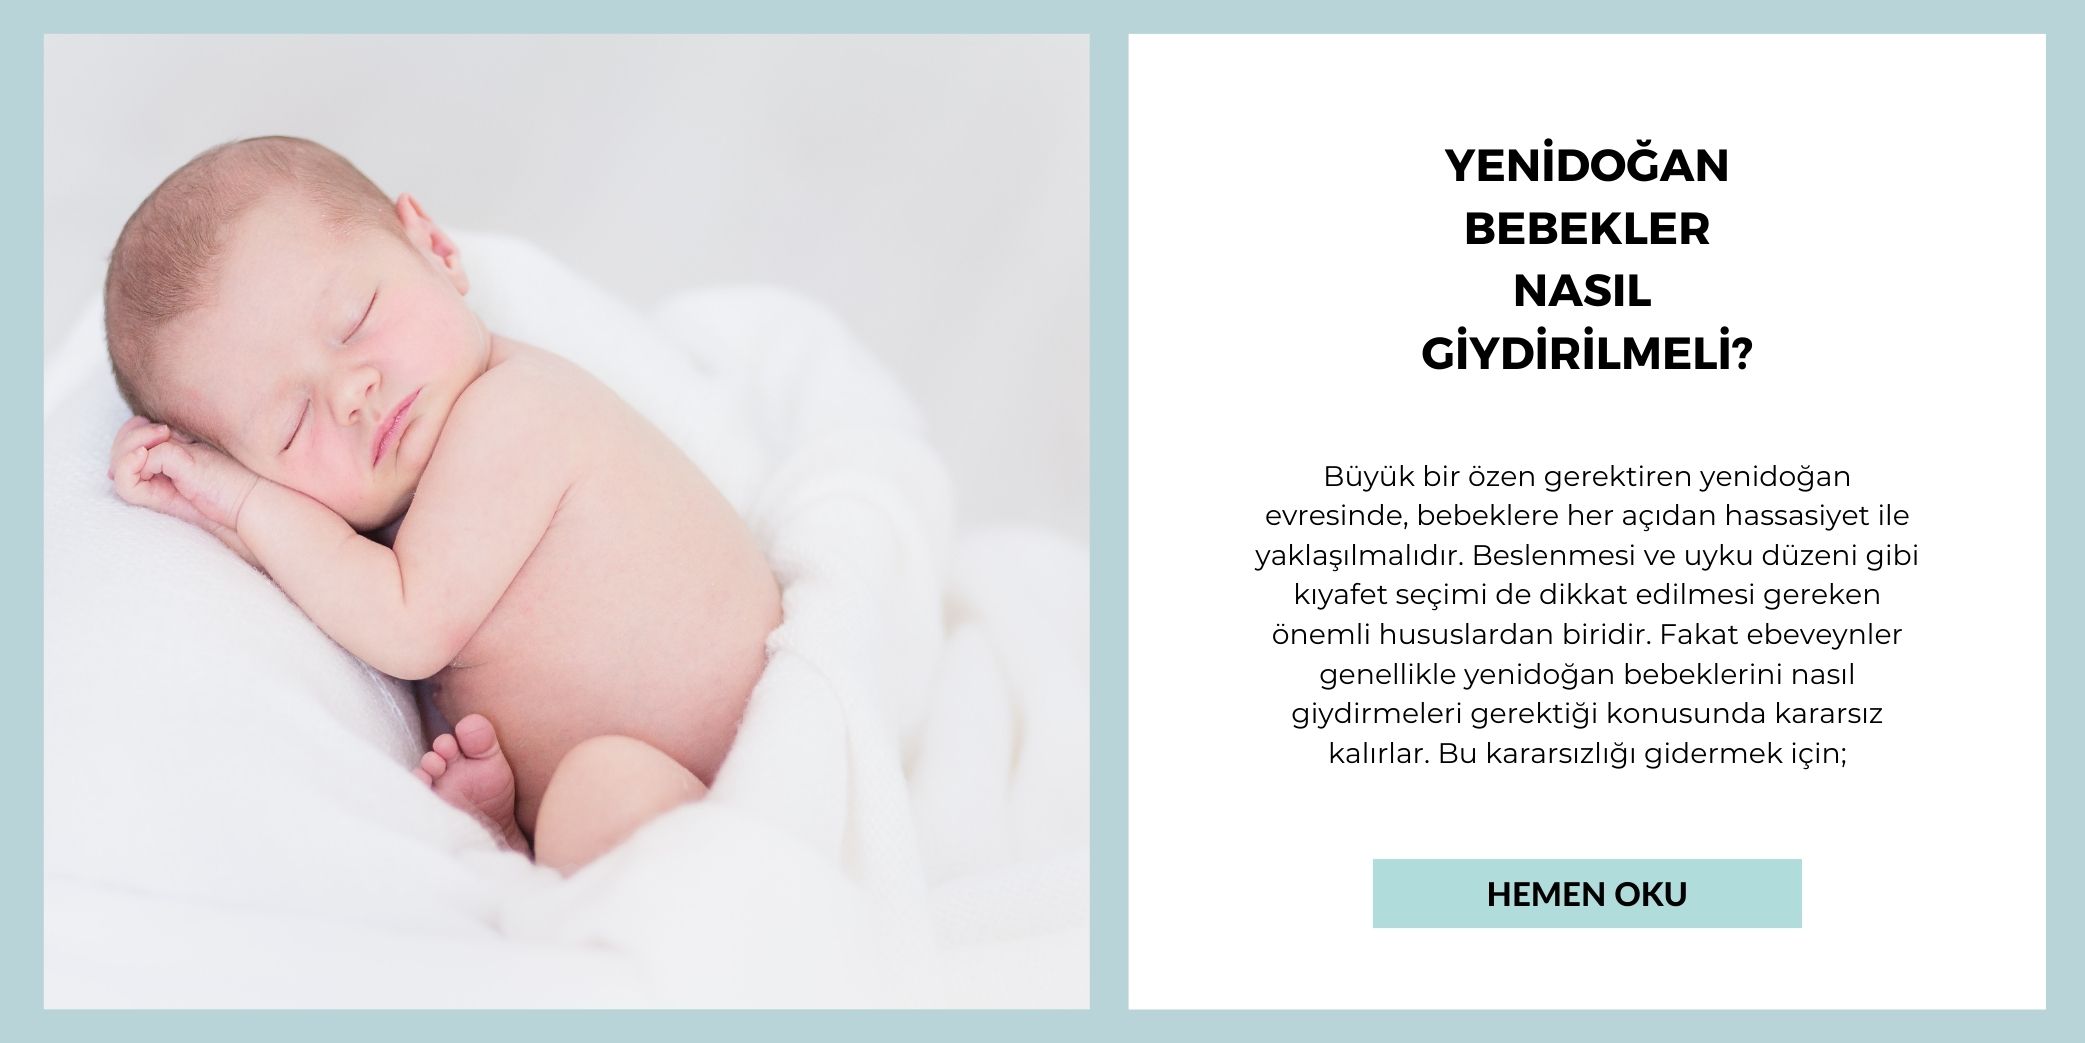 Yenidoğan Bebek Nasıl Giydirilmeli